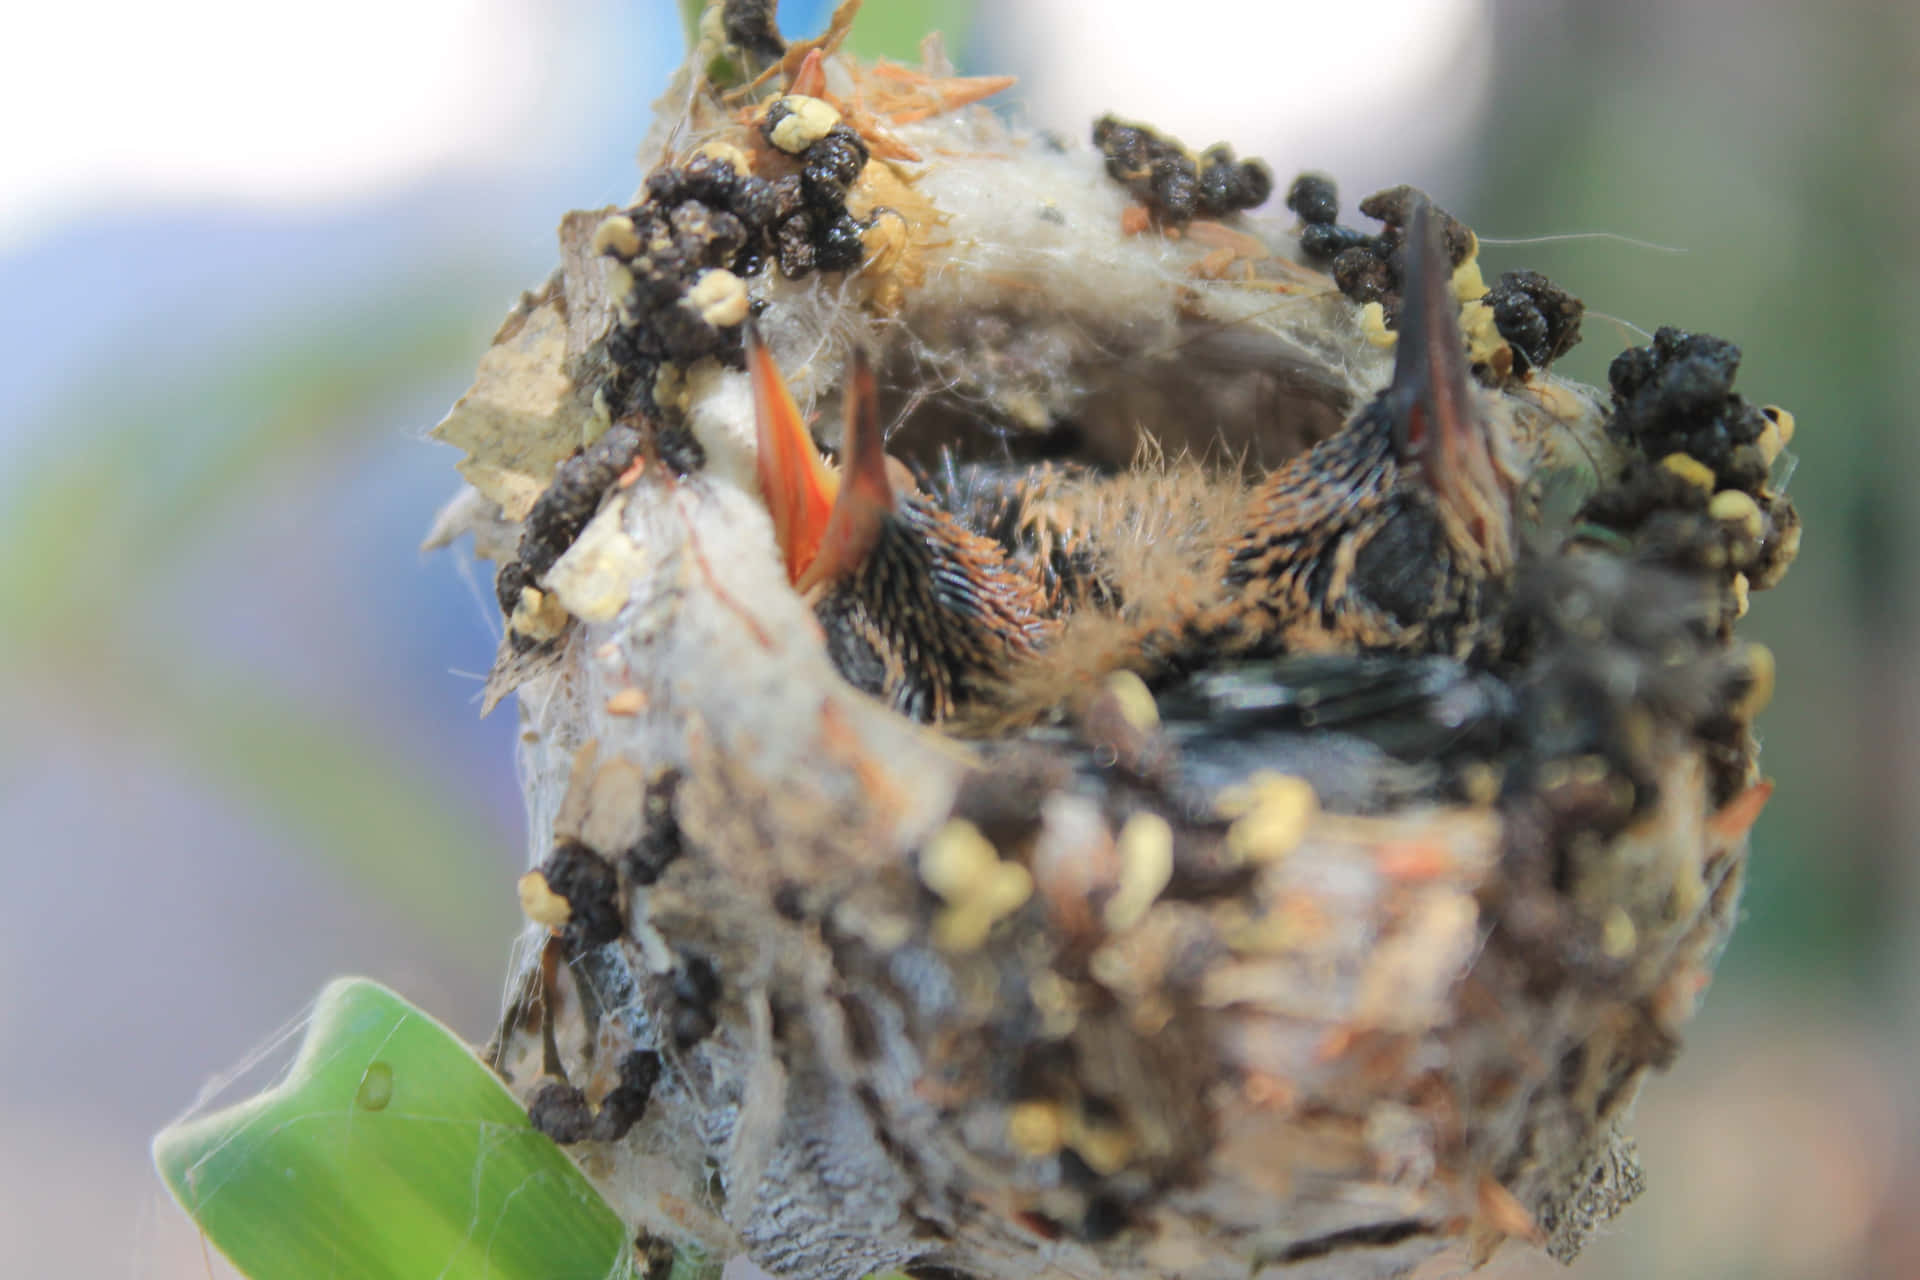 A close up of a hummingbird nest built from woven moss